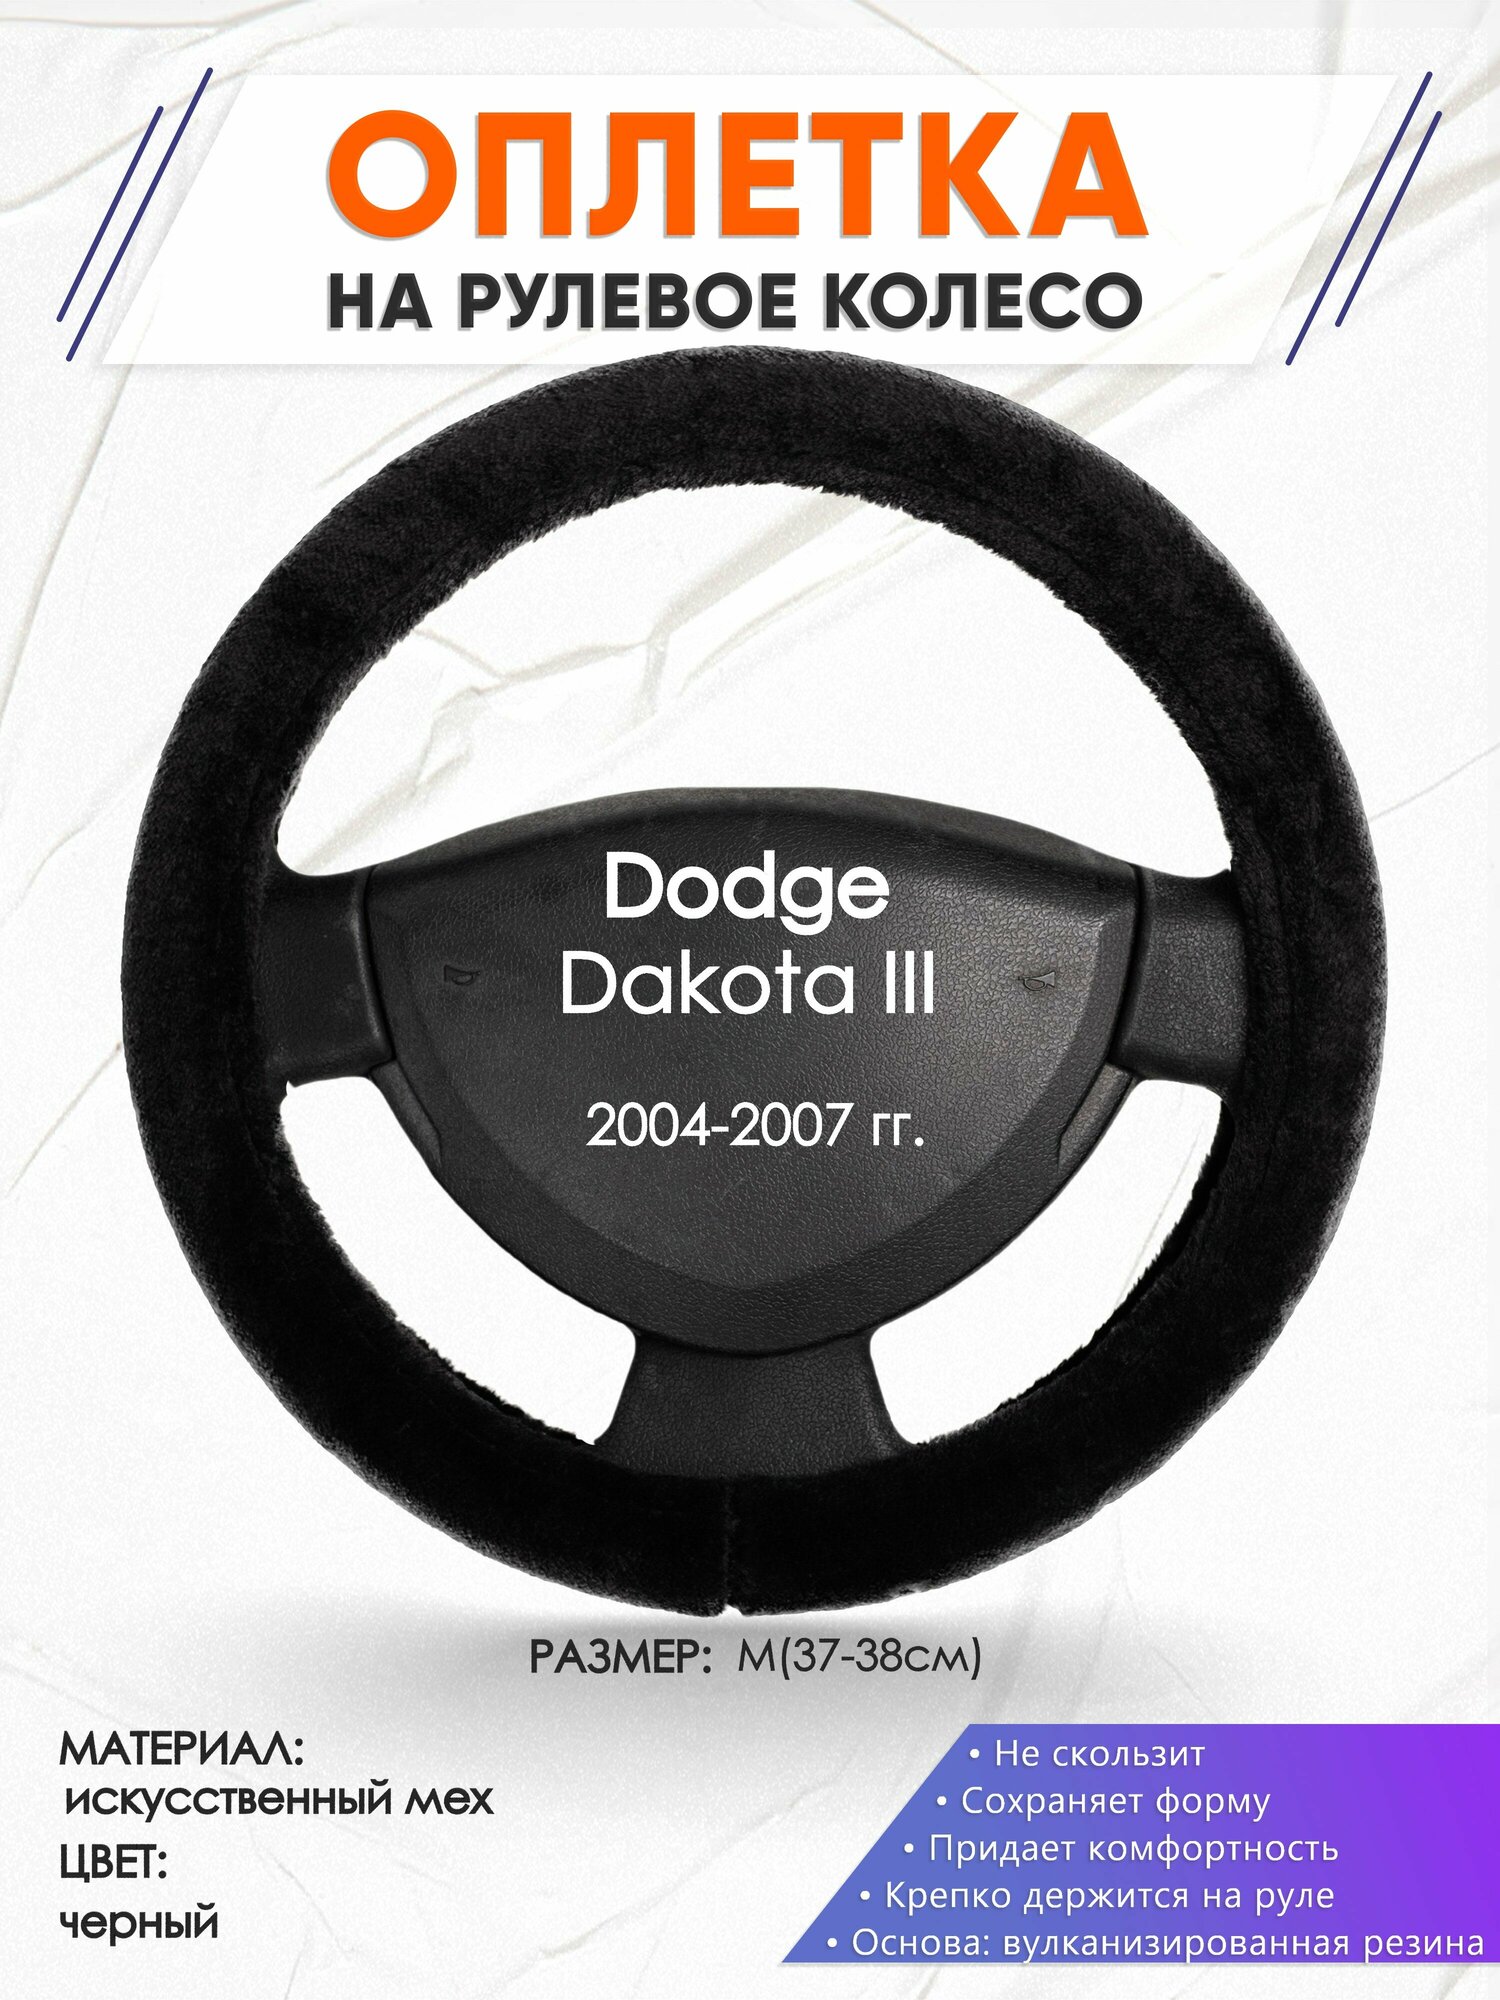 Оплетка наруль для Dodge Dakota 3(Додж Дакота 3) 2004-2007 годов выпуска размер M(37-38см) Искусственный мех 45